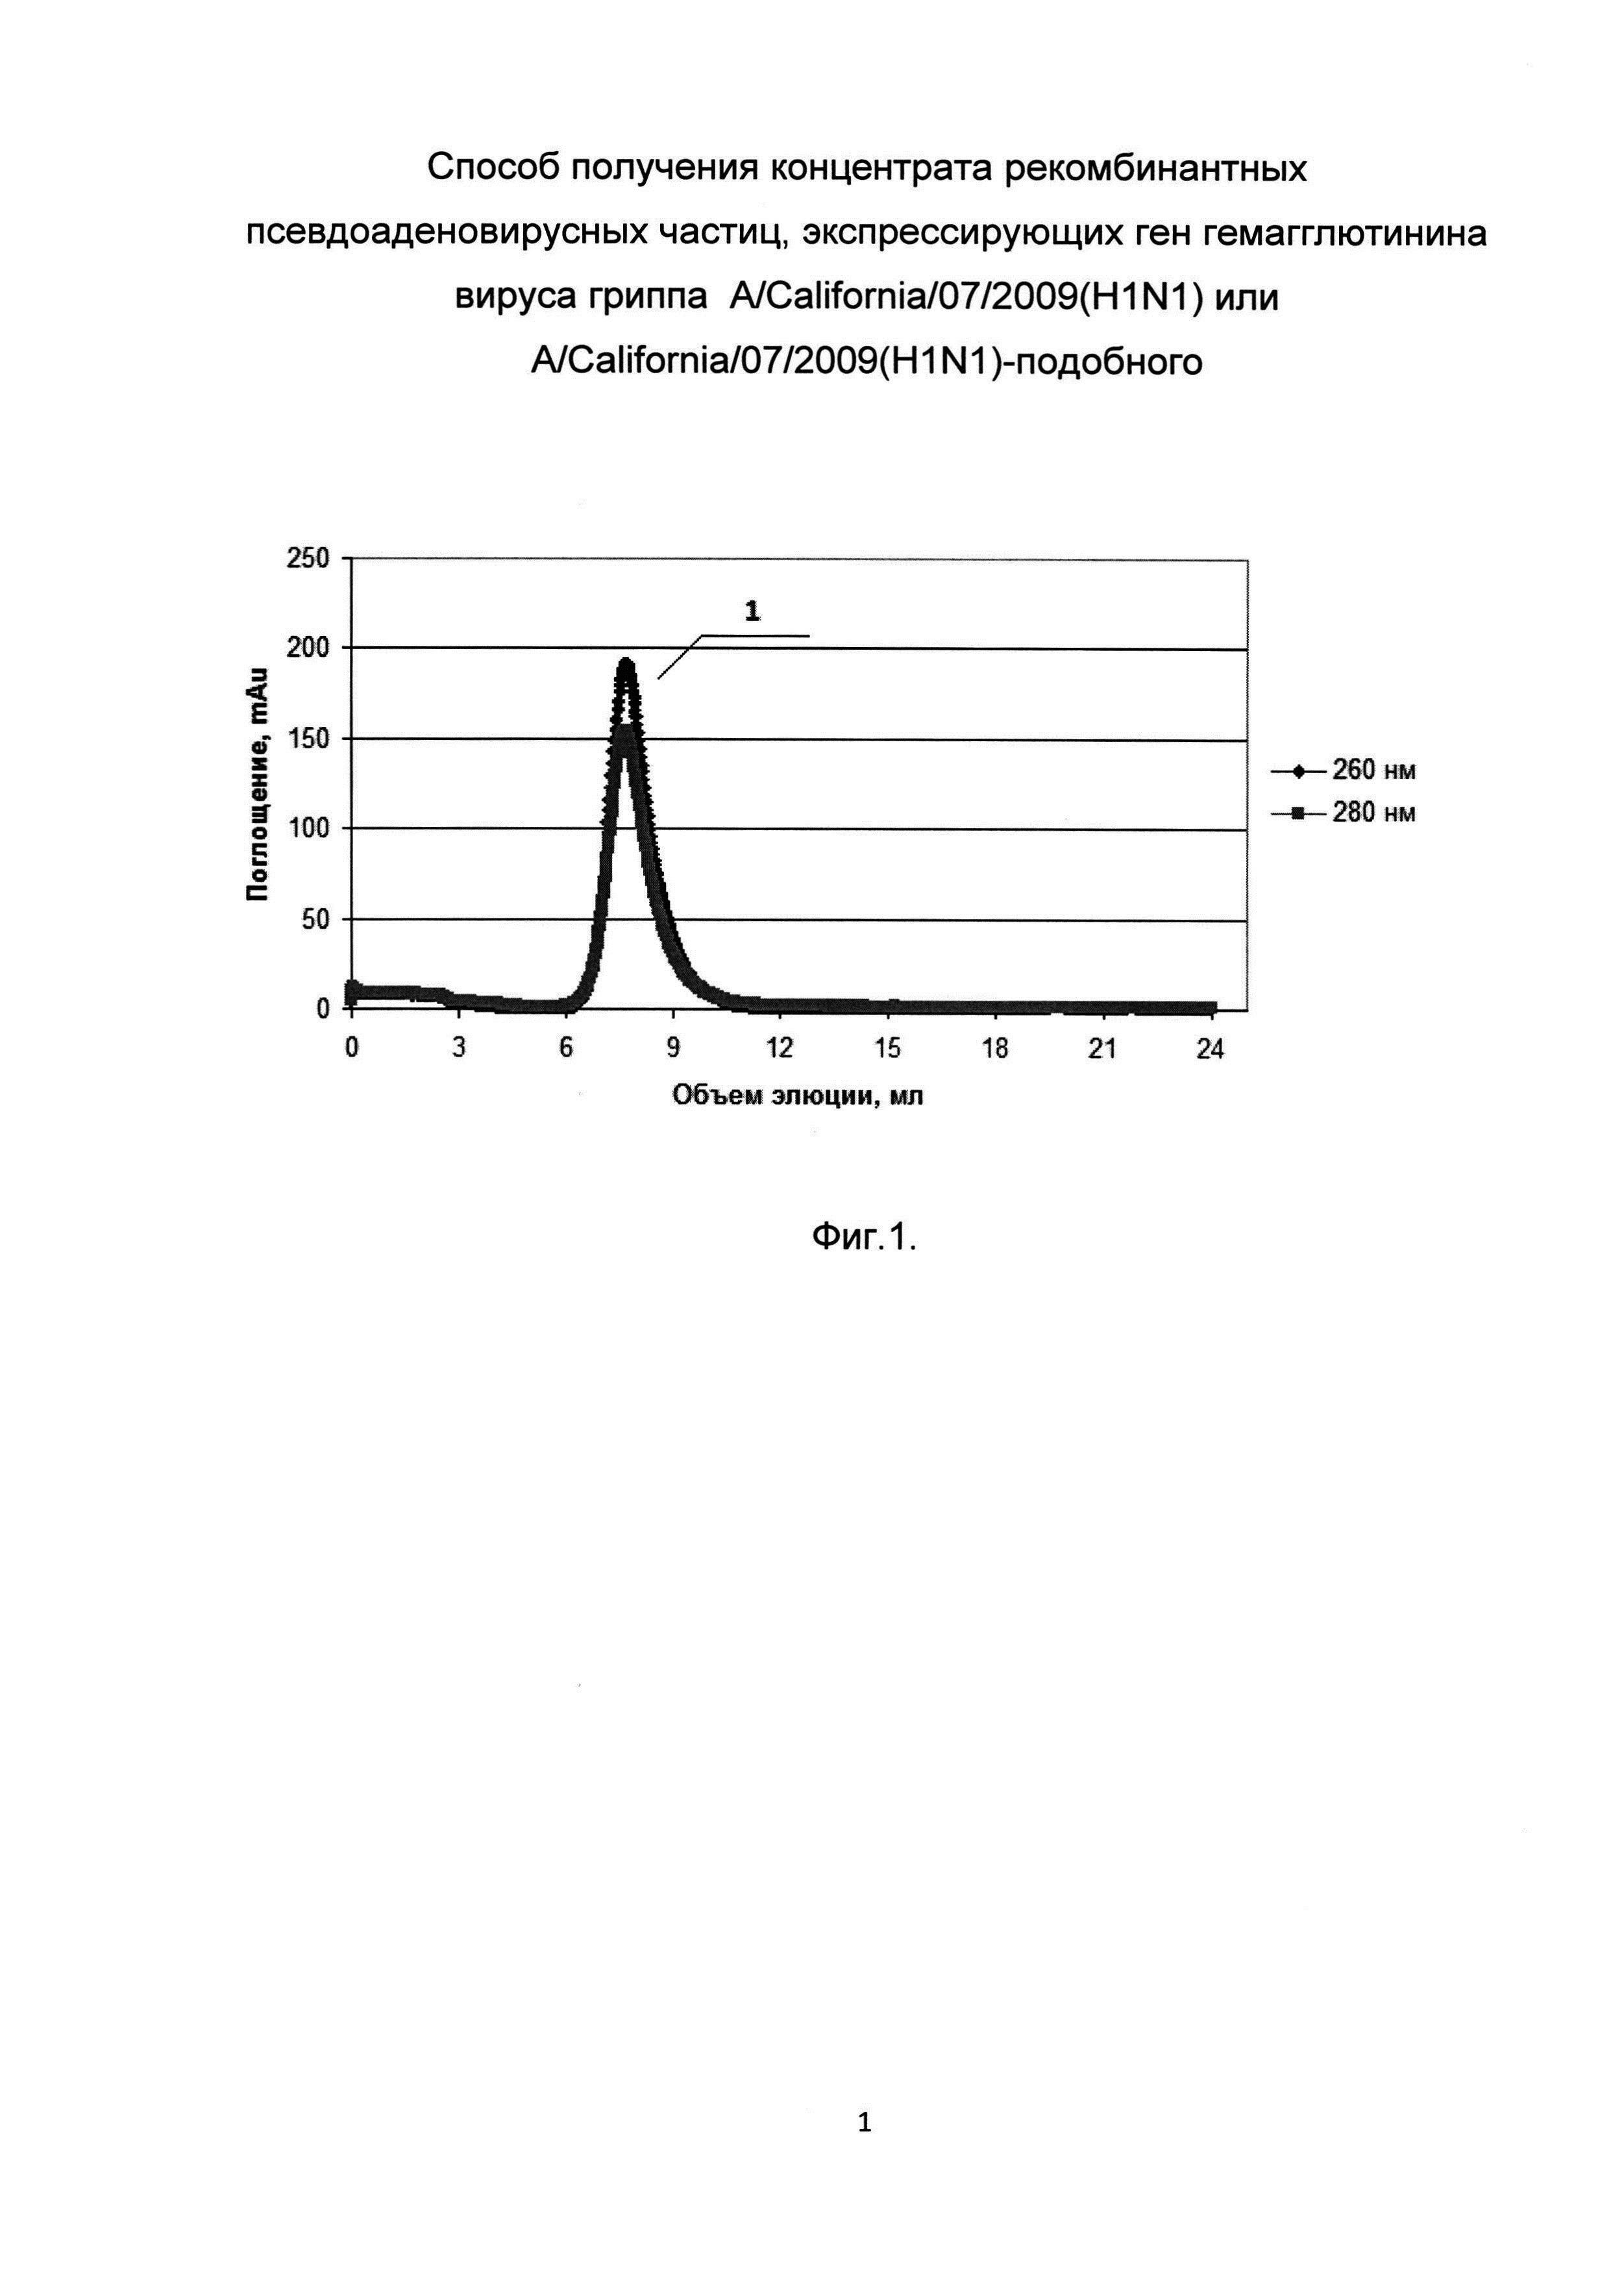 Способ получения концентрата рекомбинантных псевдоаденовирусных частиц, экспрессирующих ген гемагглютинина вируса гриппа A/California/07/2009(H1N1)